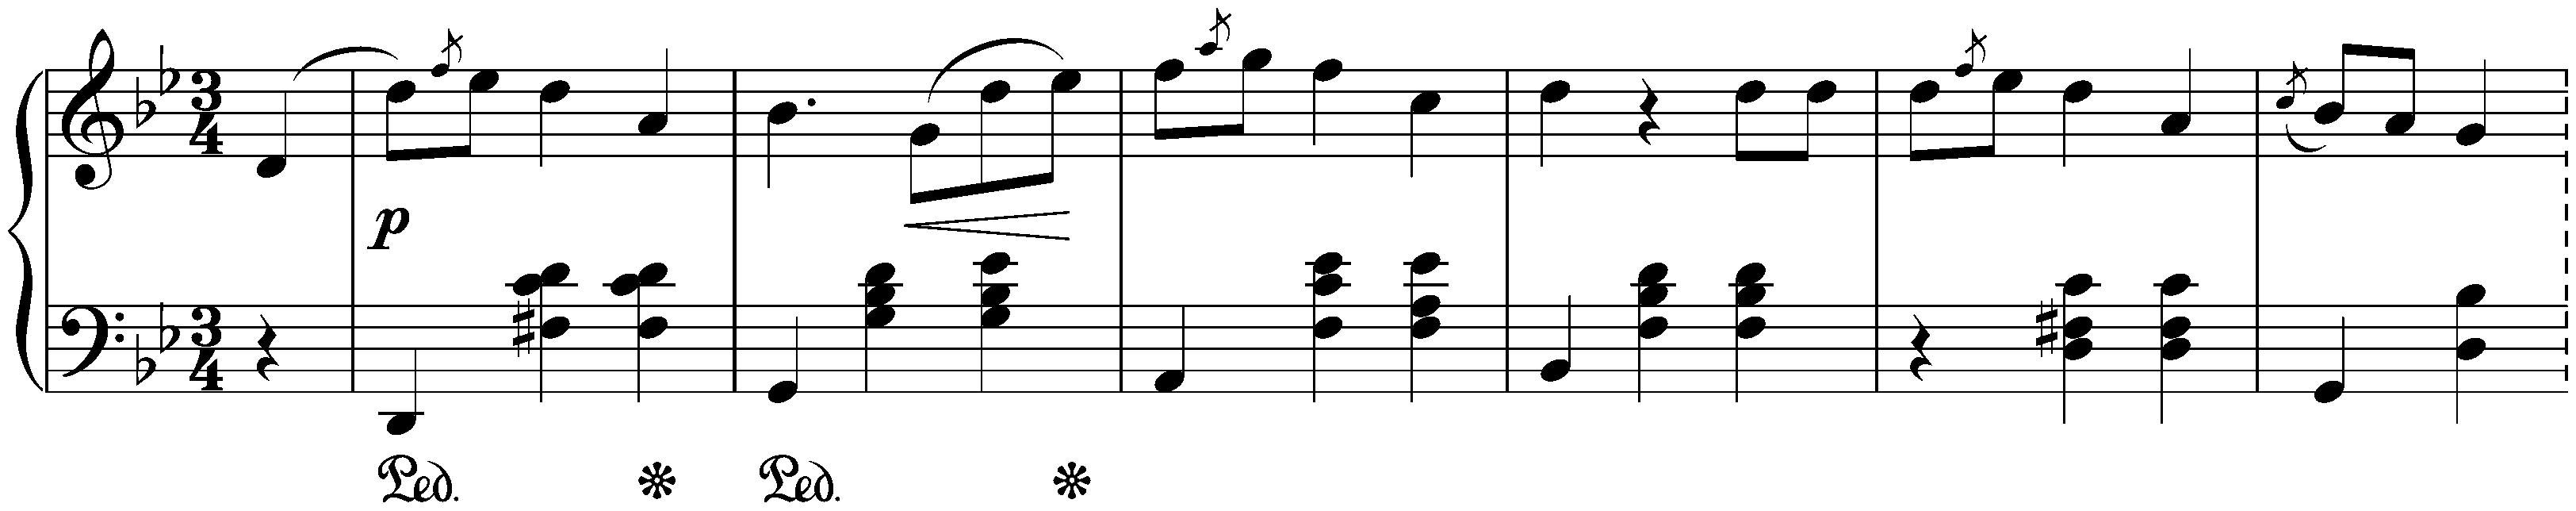 Four Mazurkas, op. 67; 2. G minor